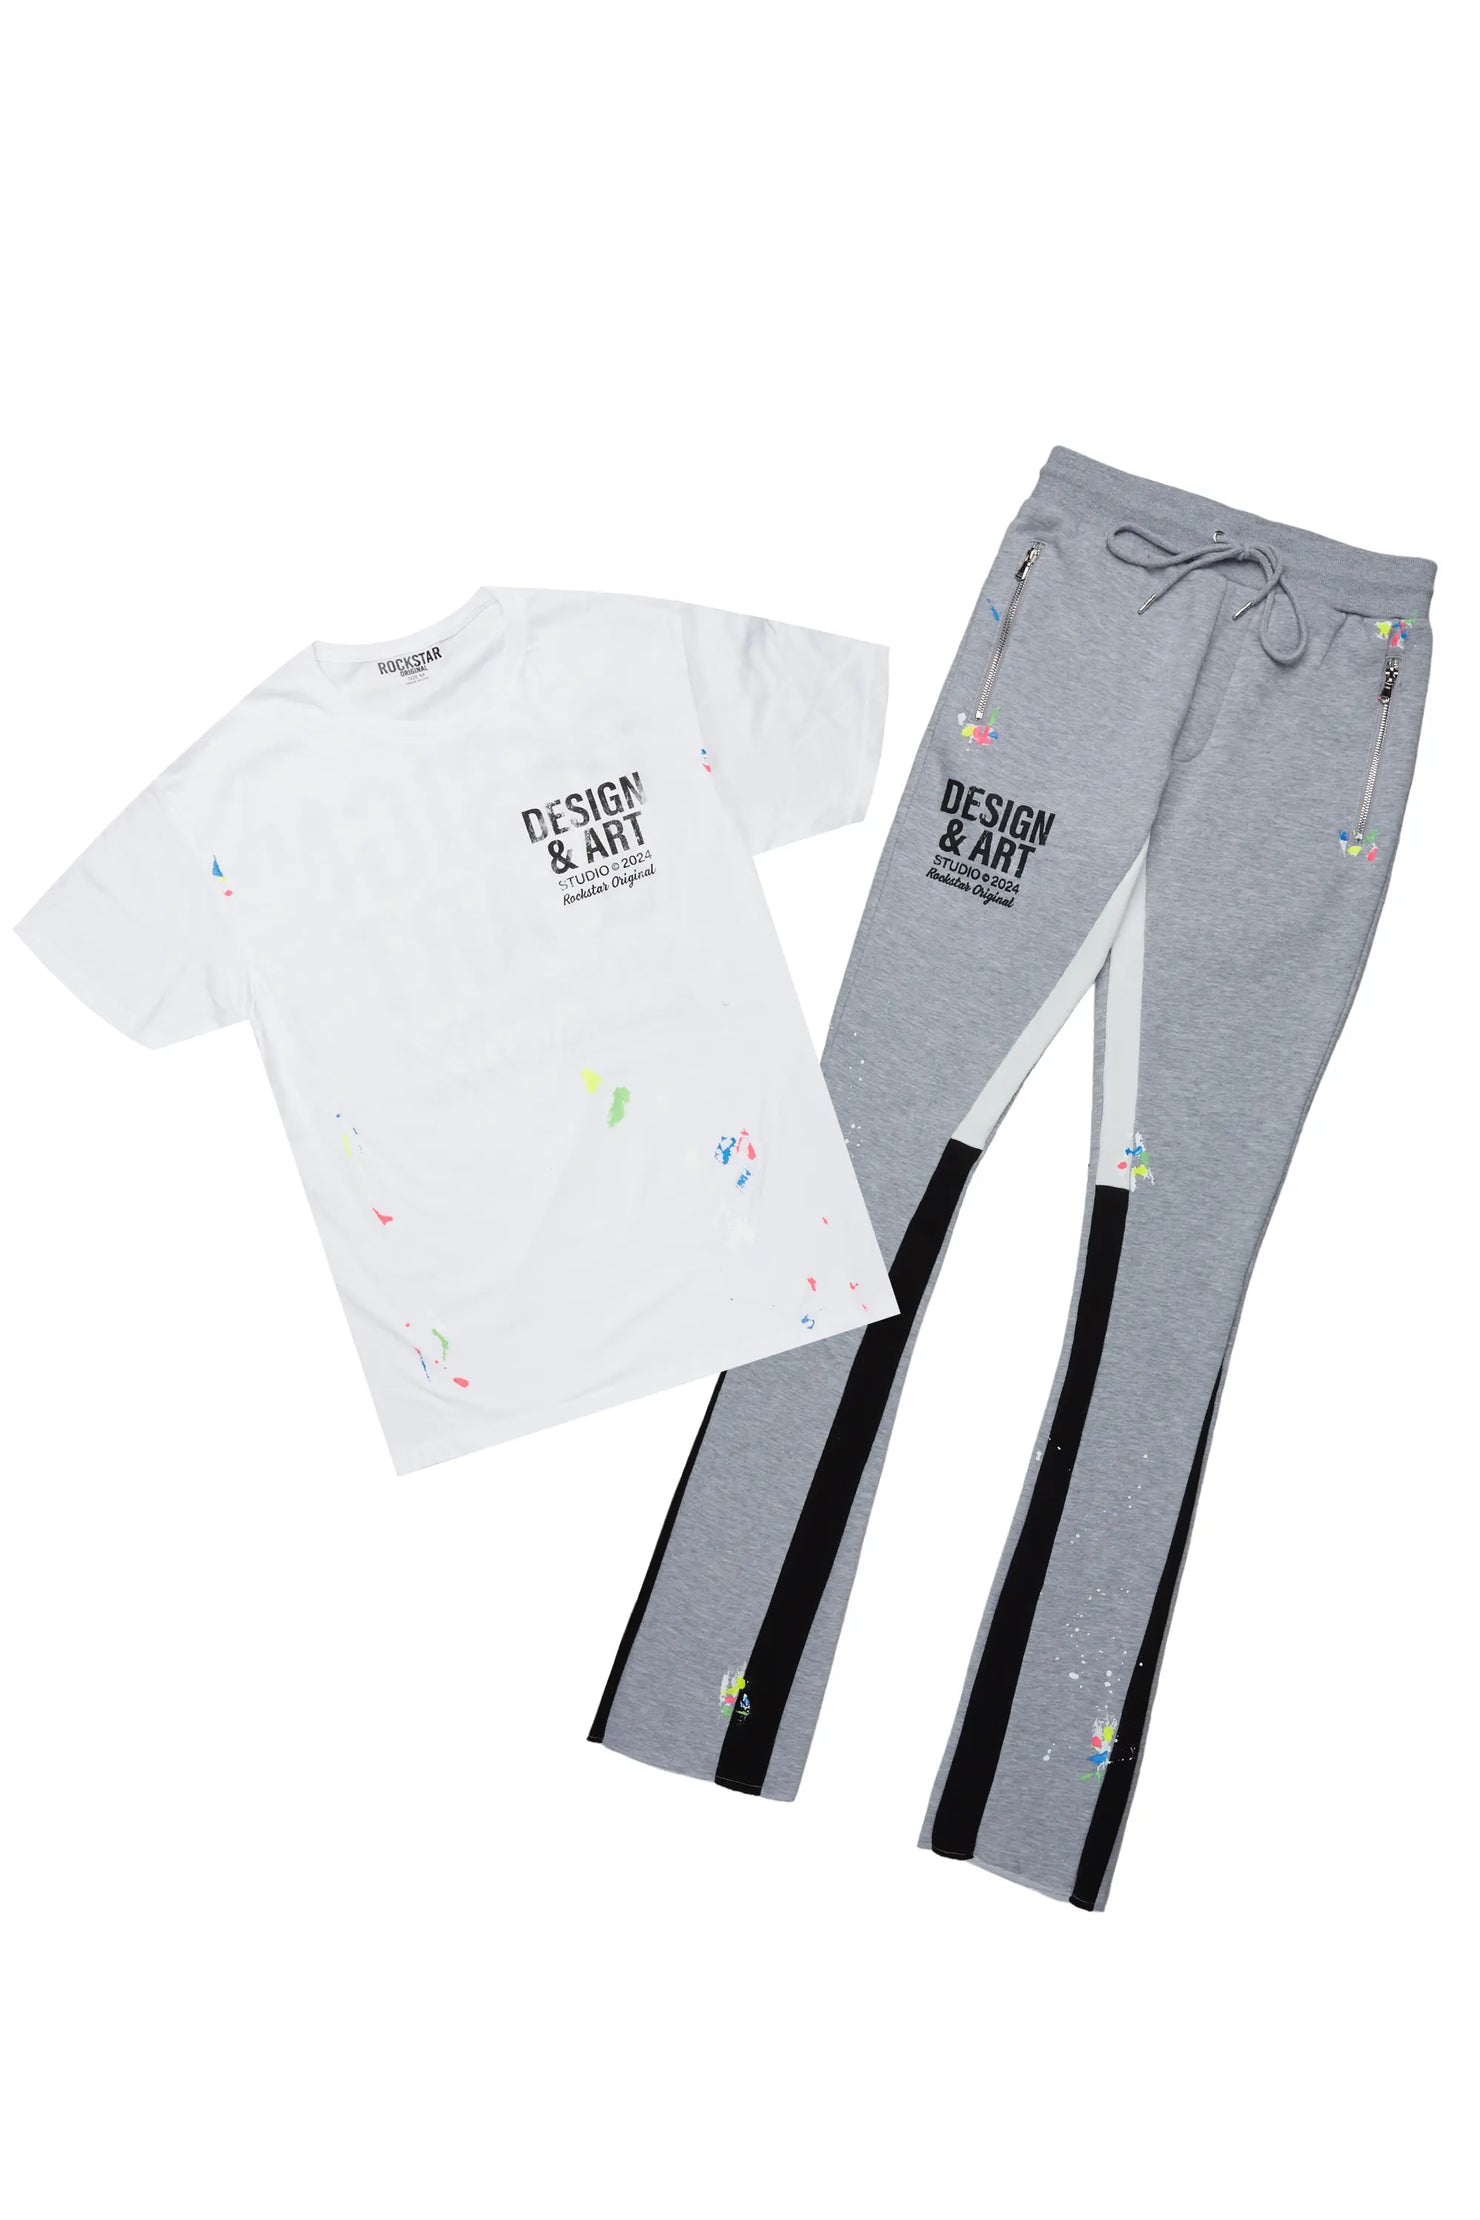 Mancha White/Grey T-Shirt Stacked Flare Track Set